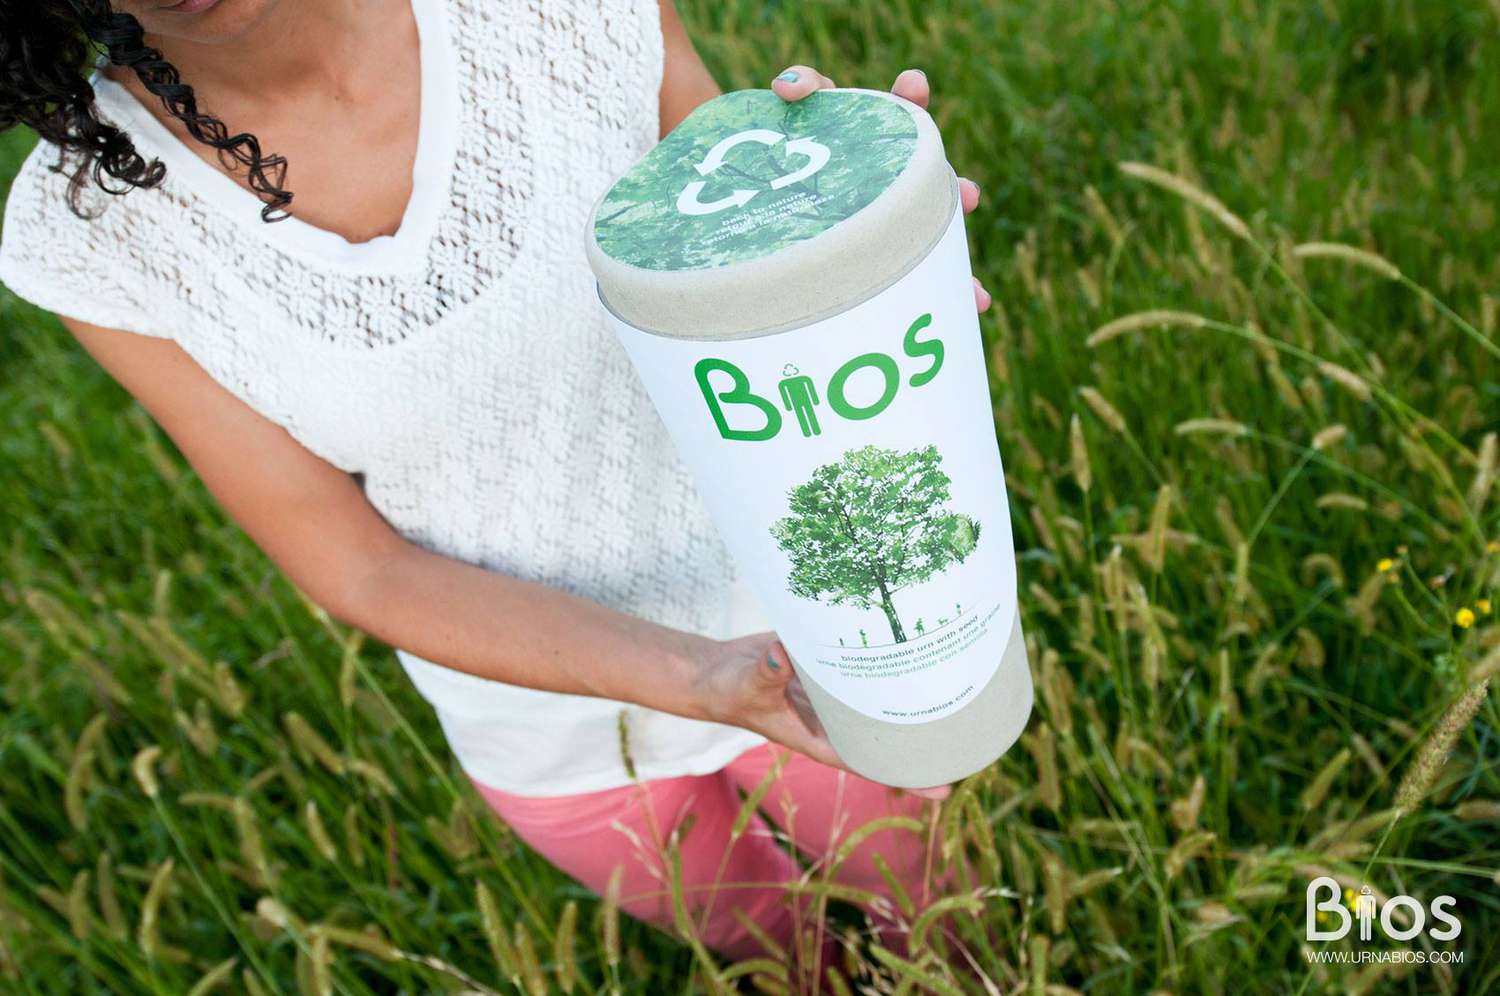 Bios骨灰盒是100%可生物降解的，里面装着你爱人的骨灰和一颗种树的种子。